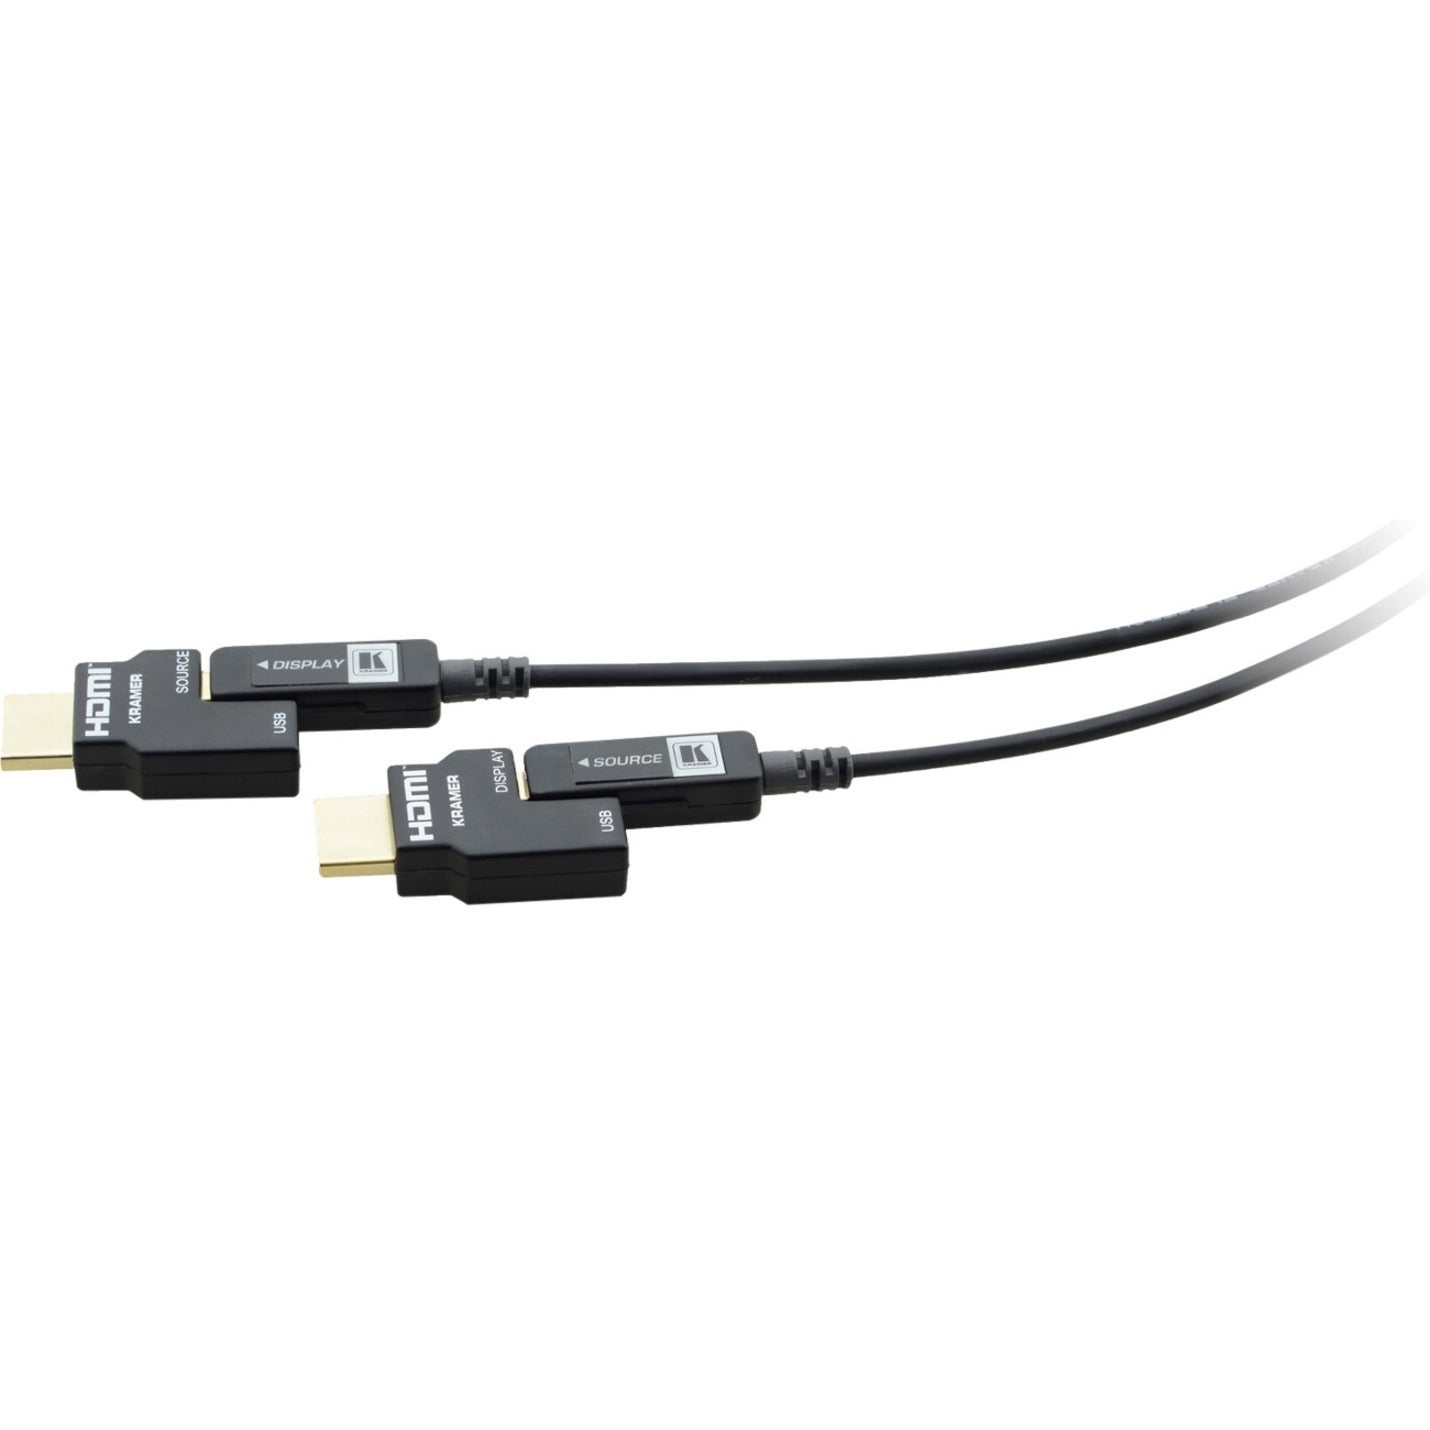 كرامر كي بي-أوتش/60-98 كابل HDMI بصري نشط 4K قابل للتوصيل 98.43 قدم مقاوم للتآكل حماية EMI/RF RoHS معتمد